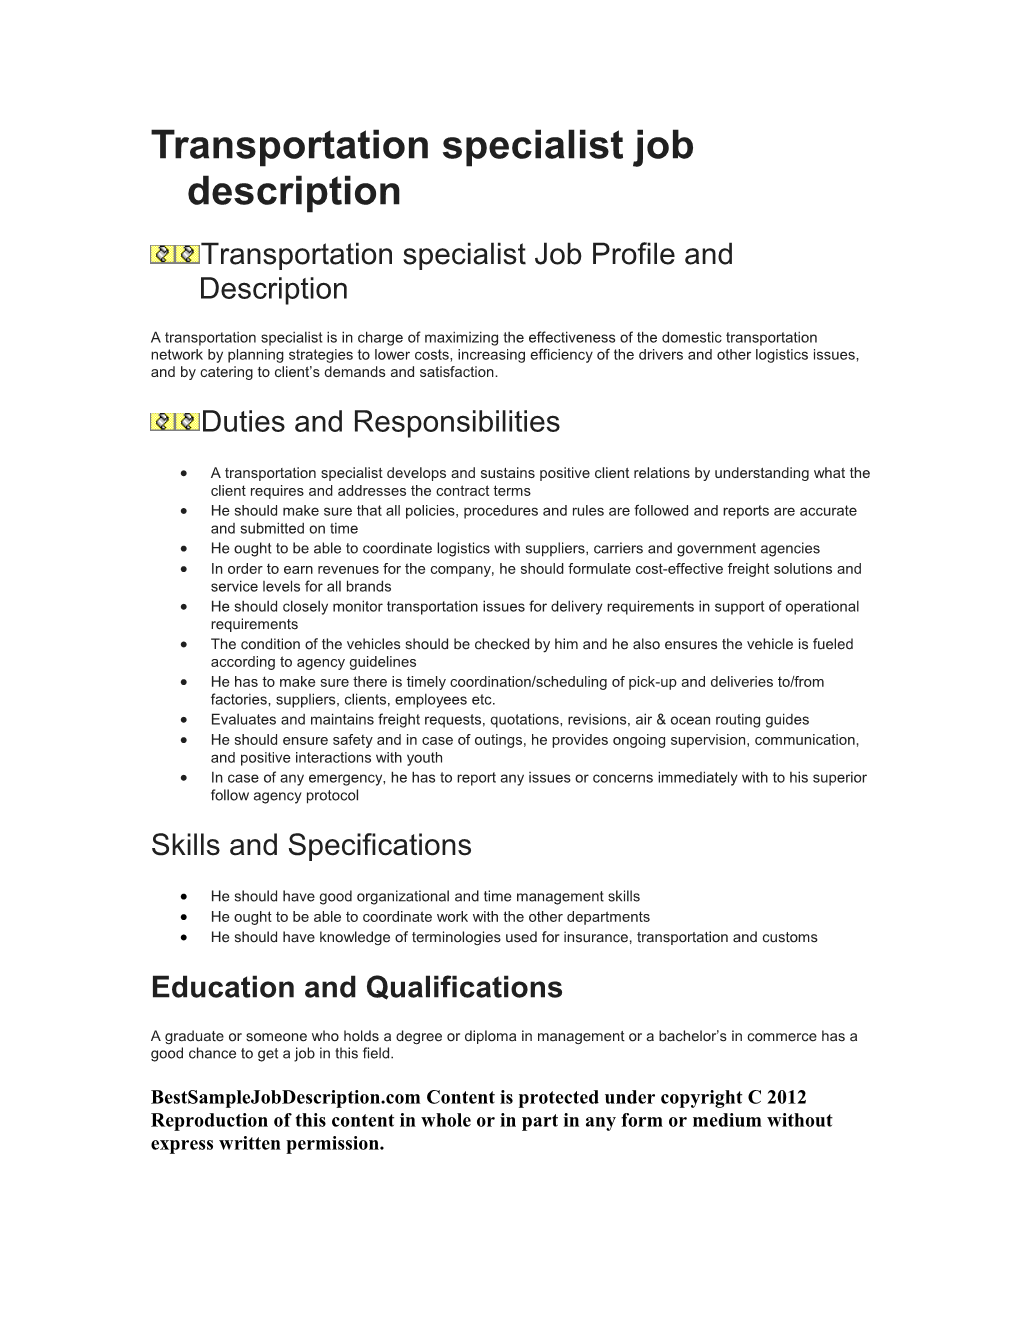 Transportation Specialist Job Description